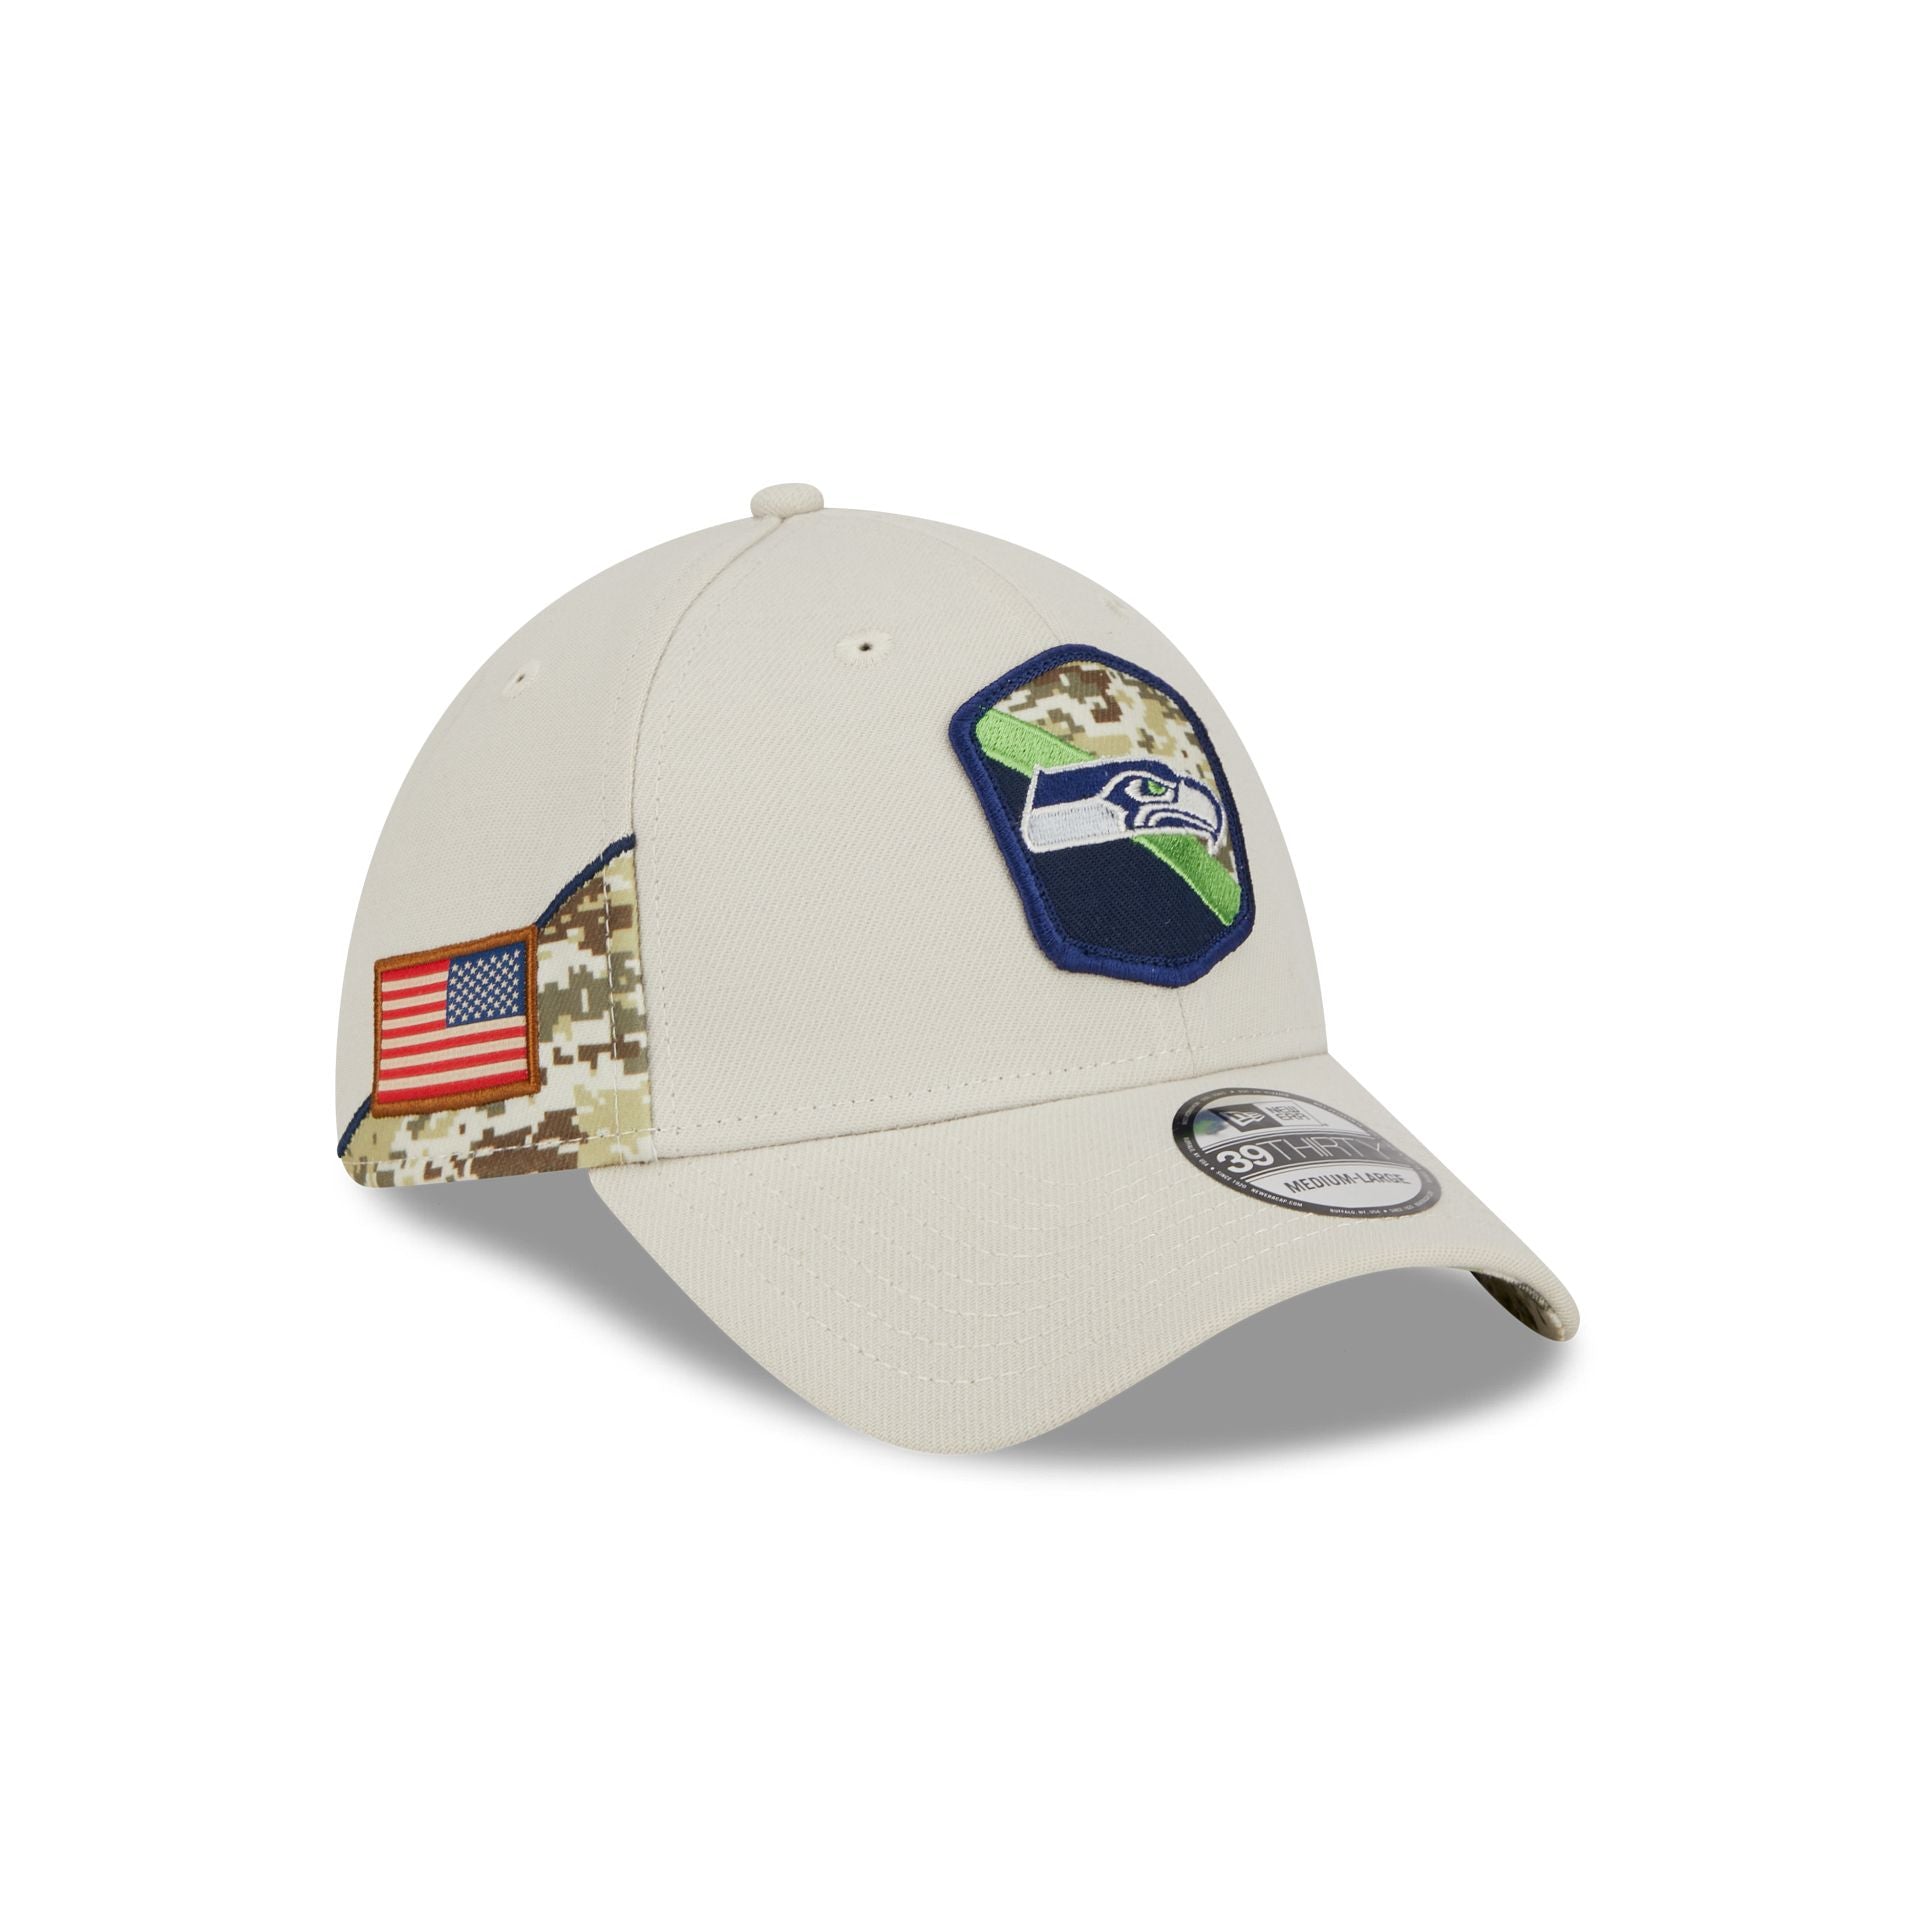 nfl shop seahawks hat